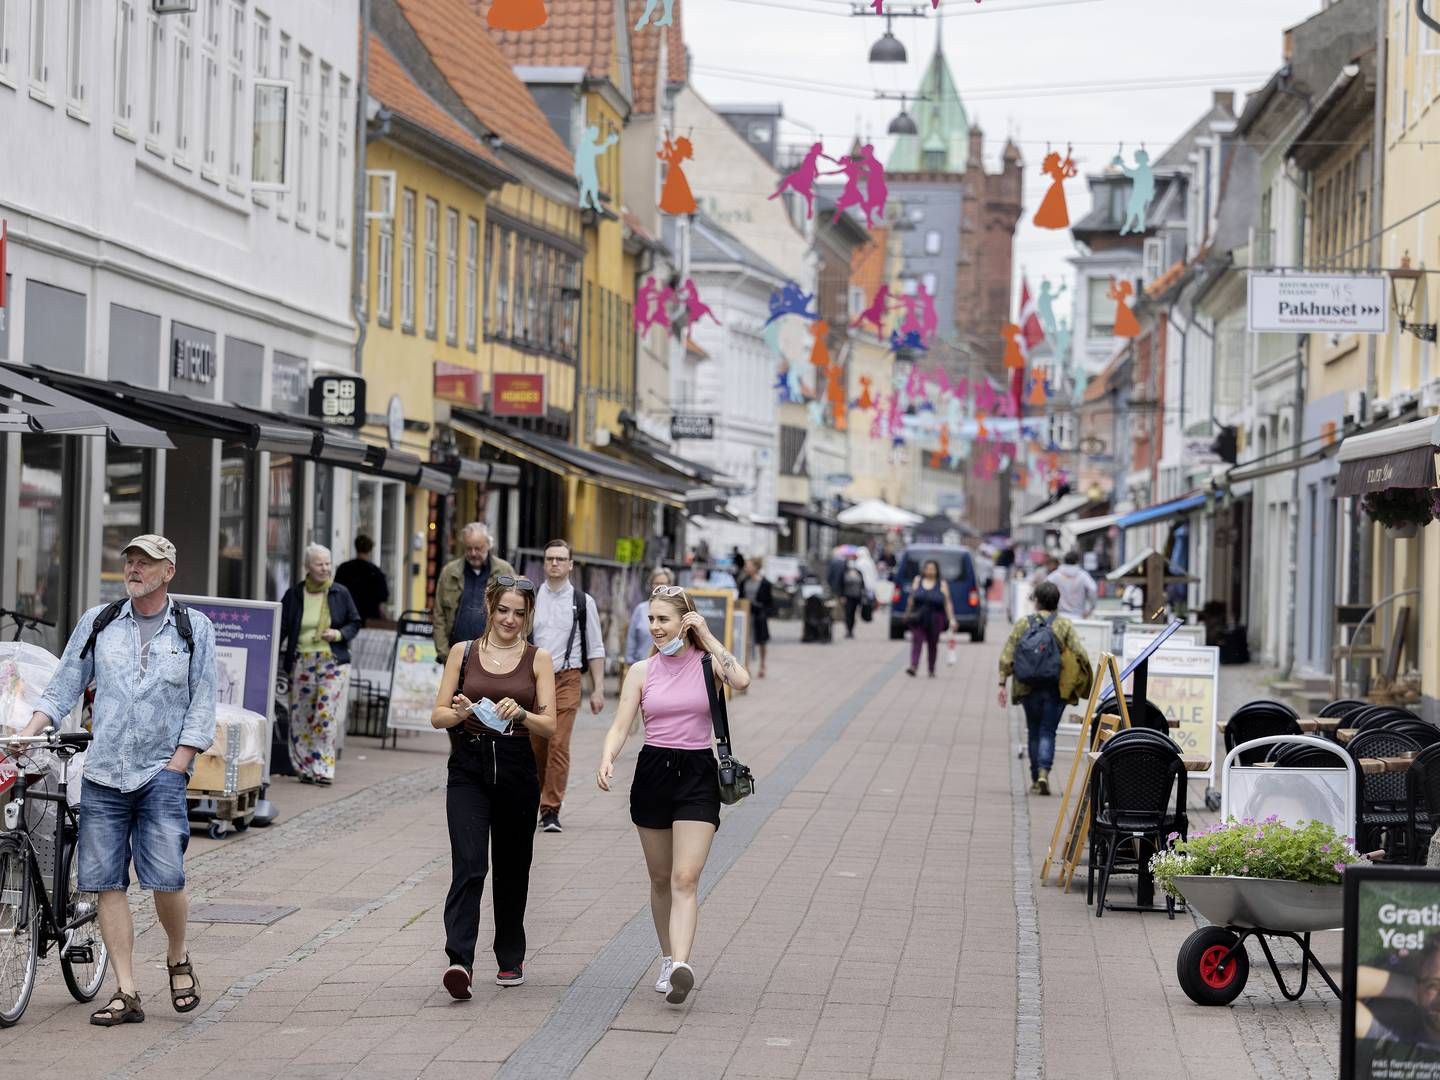 Detailbutikkerne i Danmark havde den næststørste stigning i kortomsætning i Norden i første halvår ifølge rapport fra Nets. | Foto: Thomas Borberg